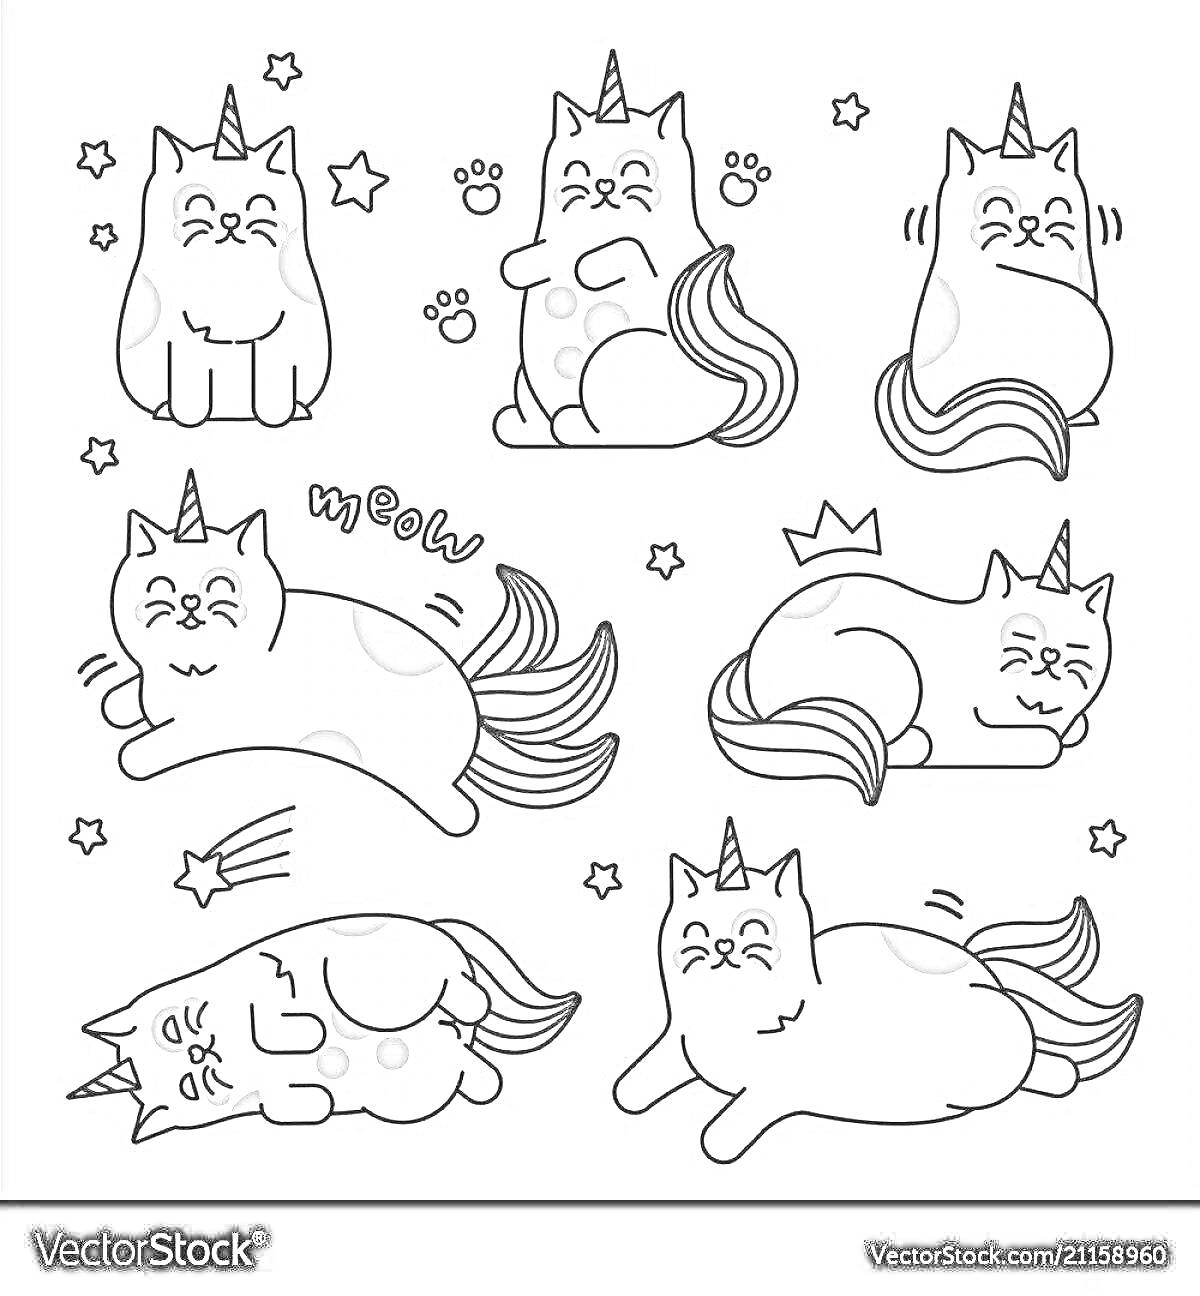 Раскраска Стикеры с кошками-единорогами, включая сидящих, лежащих и счастливых кошек с хвостами единорогов, короной, лапками и звездами